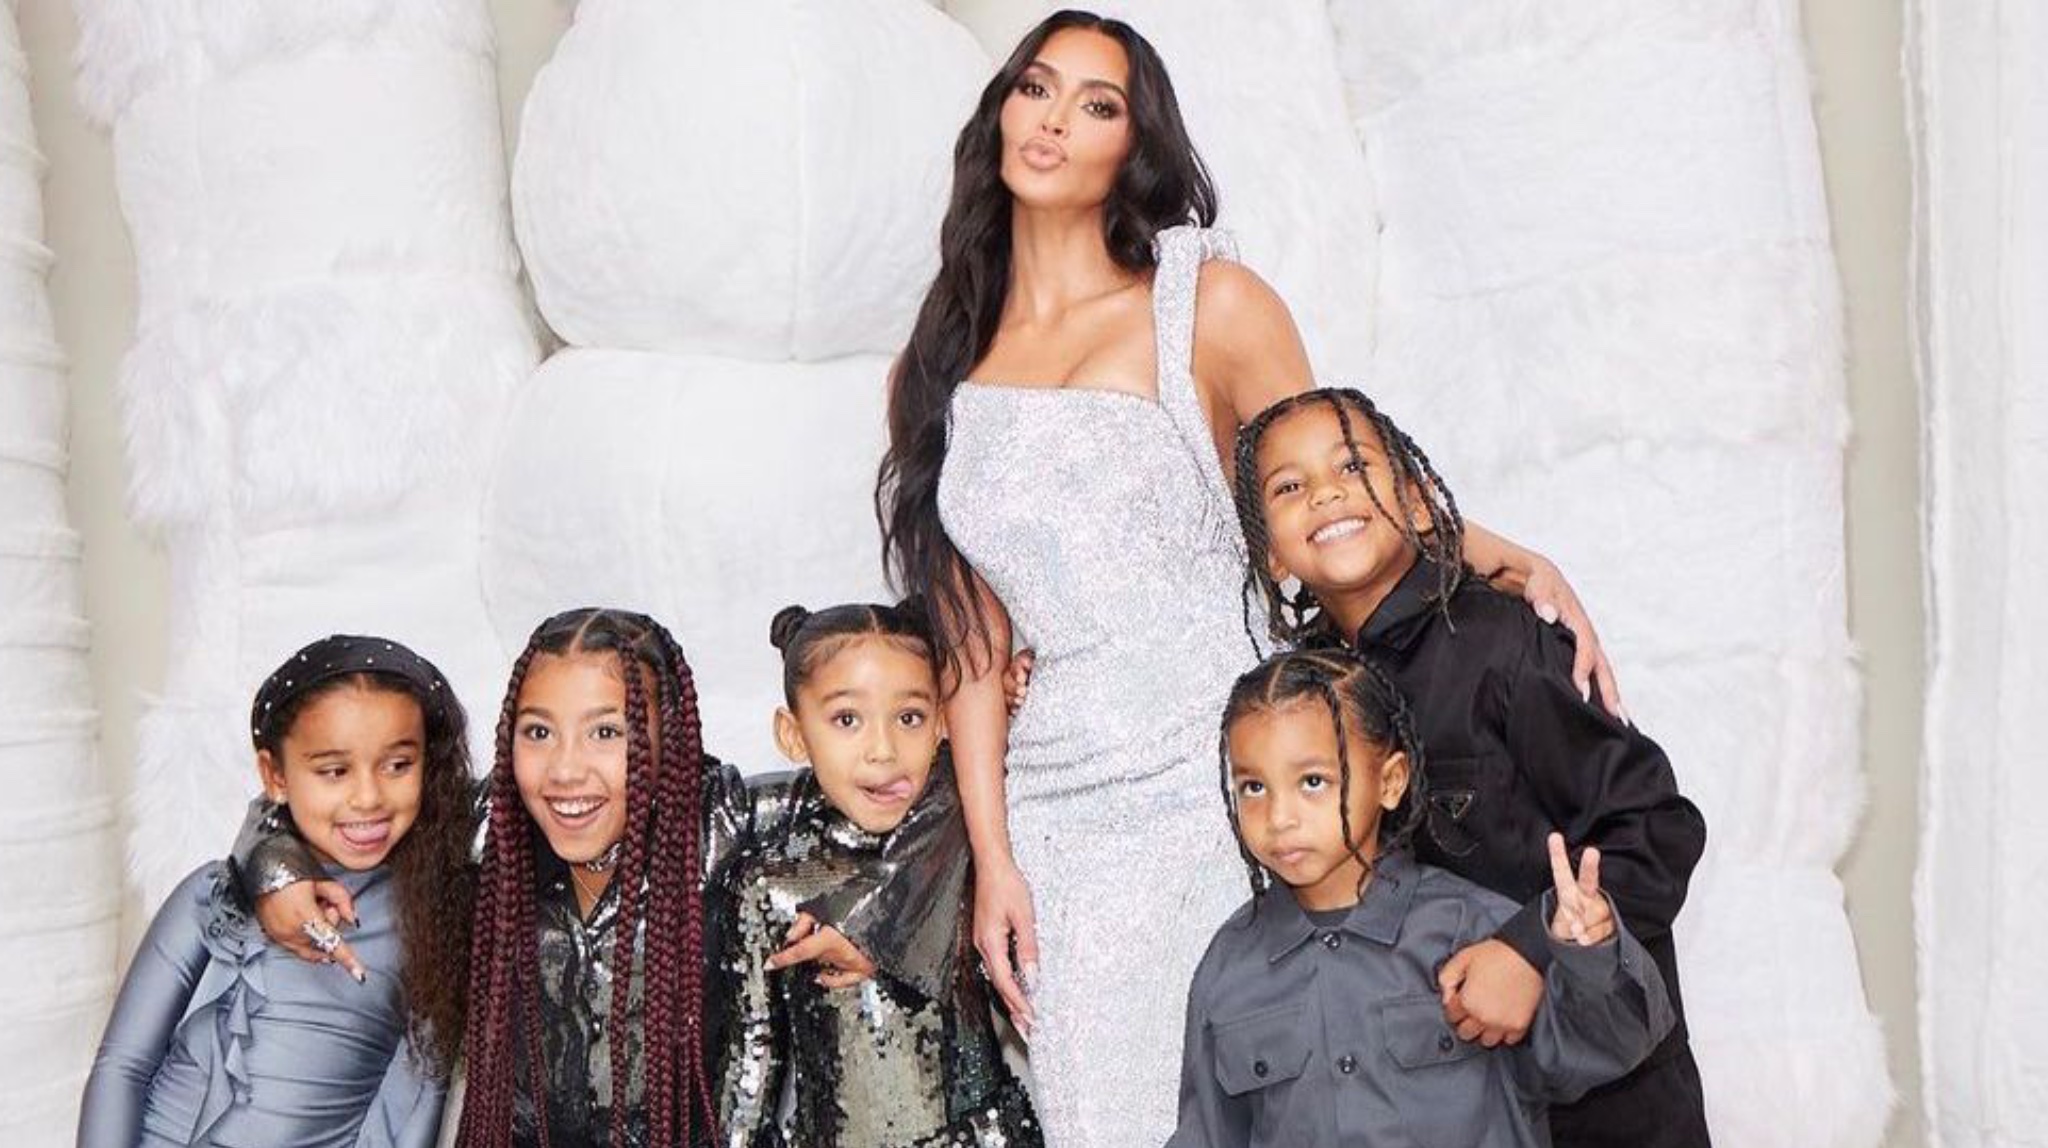 Po i rrit e vetme fëmijët e saj, Kim Kardashian e “dërrmuar” psikologjikisht: “Mu sos durimi…”!